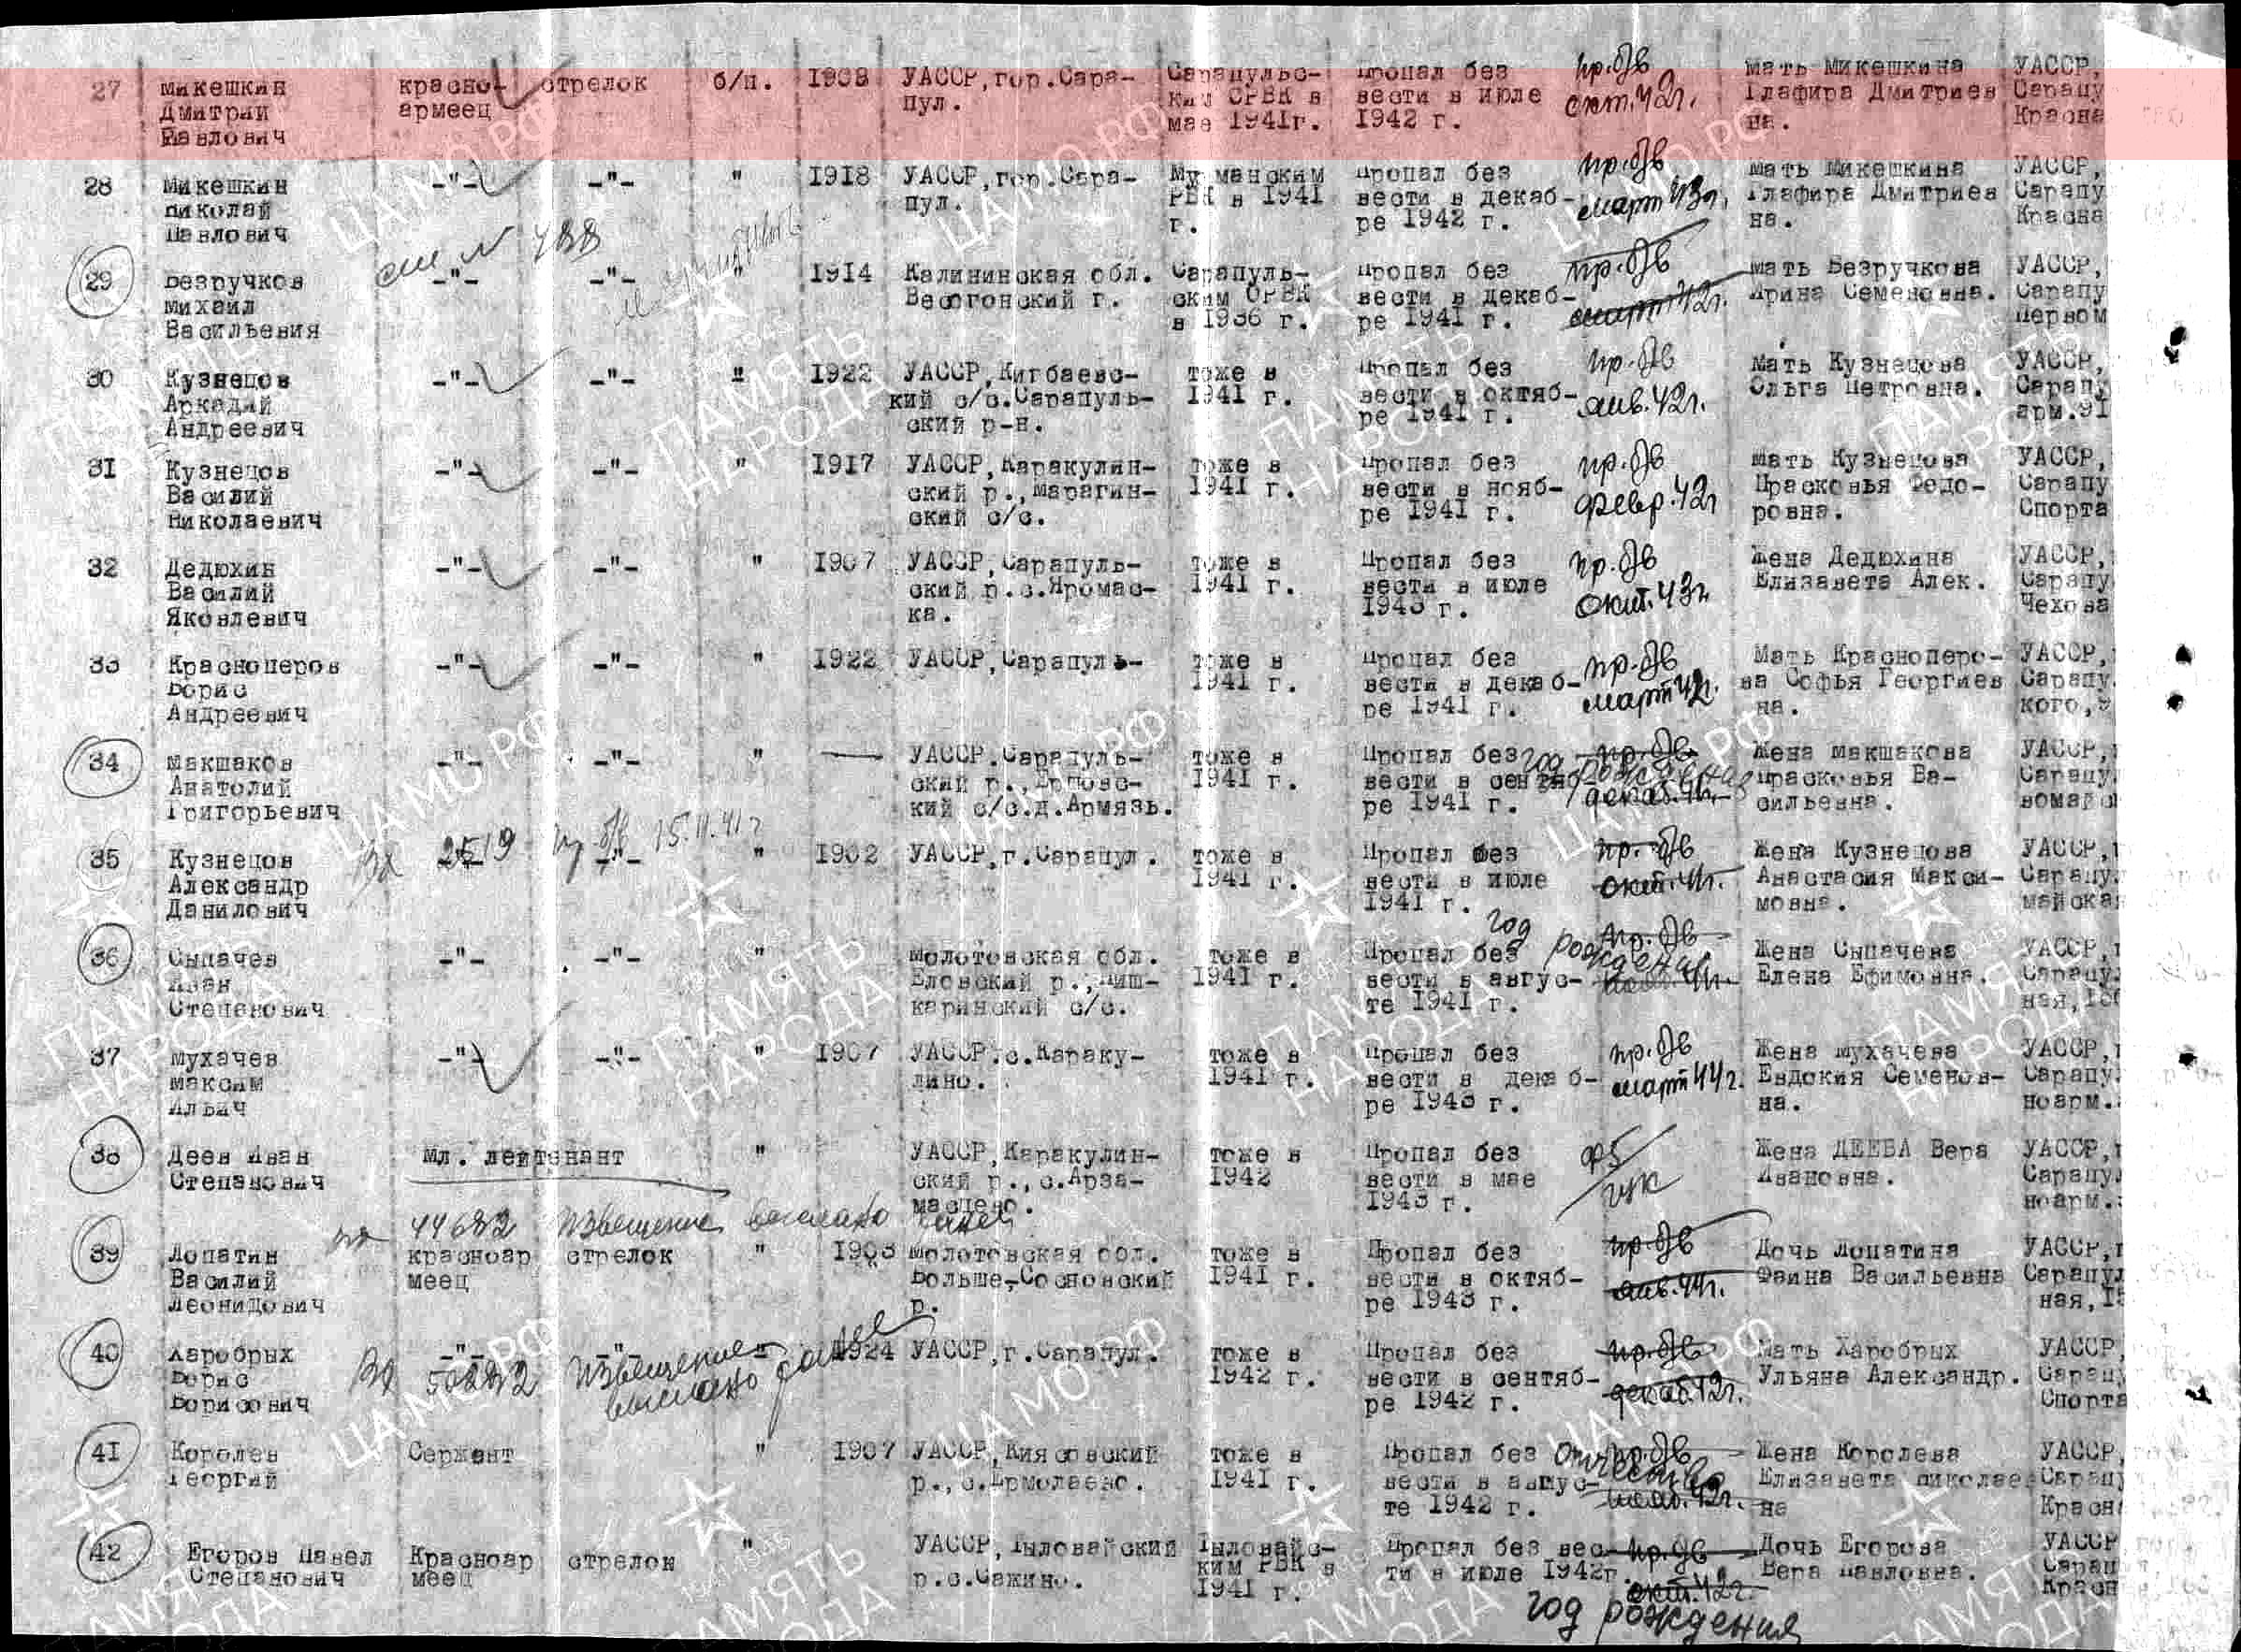 Лист донесения послевоенного периода, уточняющего потери, 27.09.1946